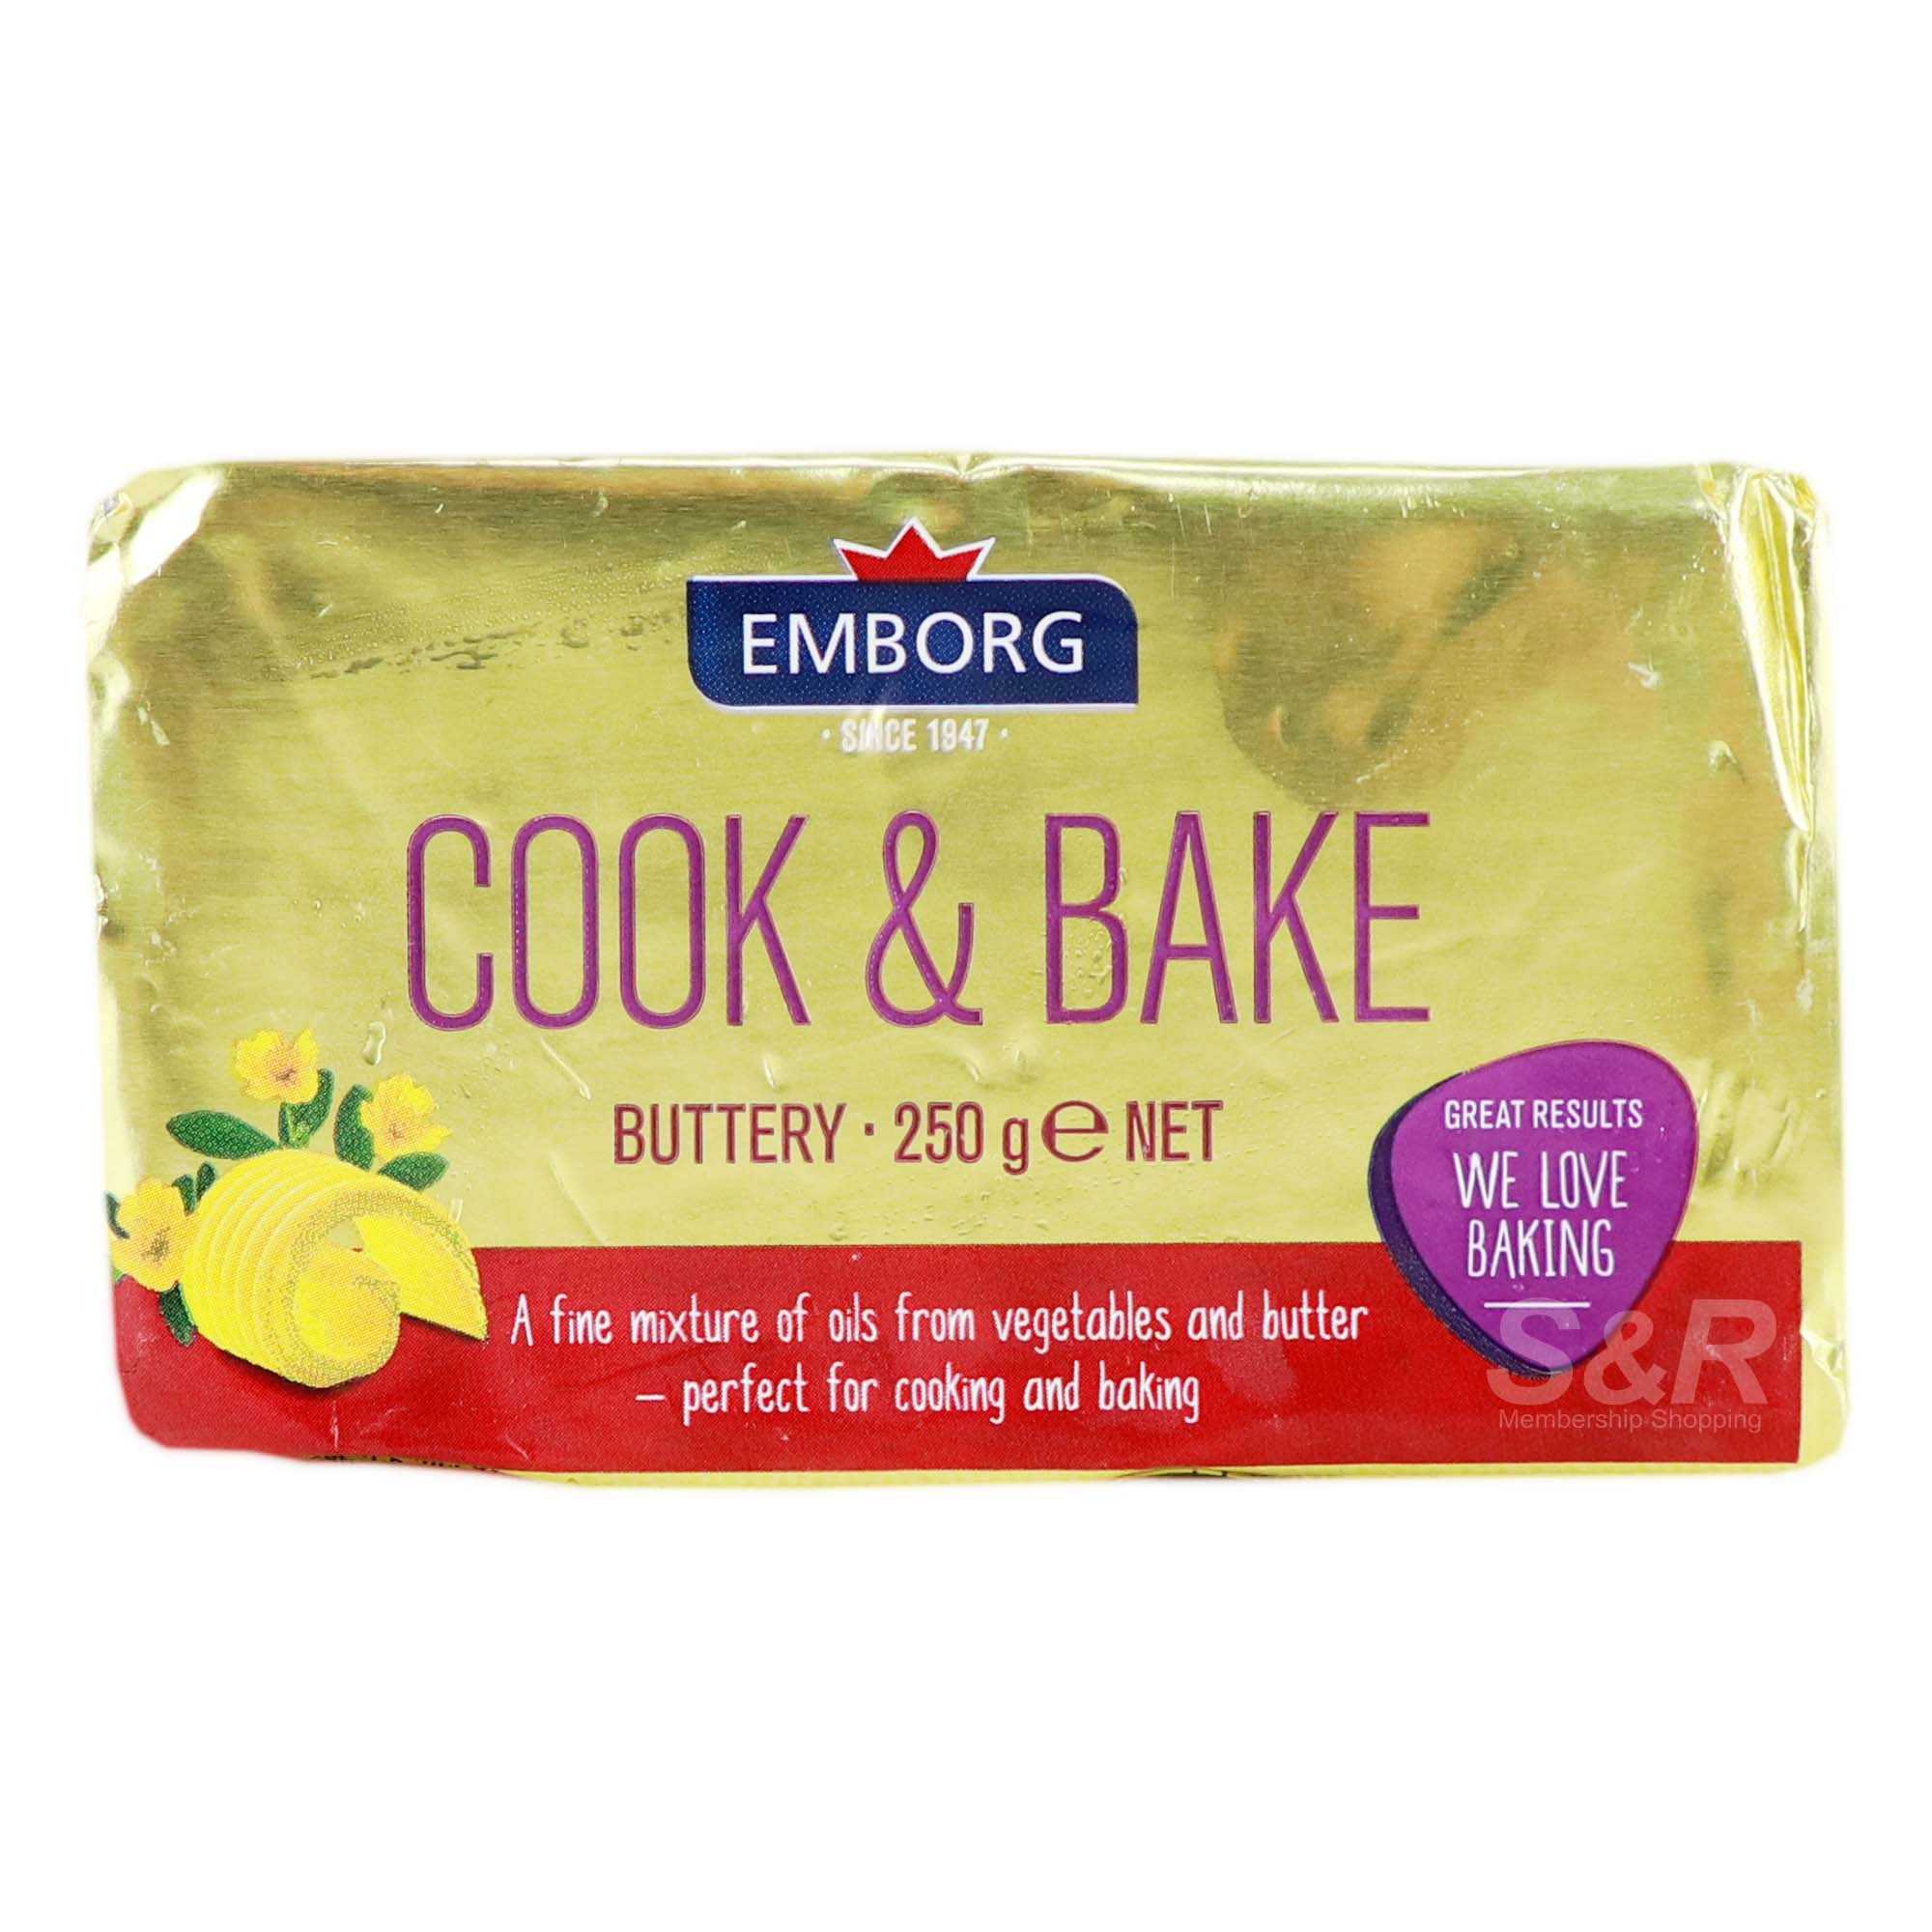 Emborg Cook & Bakery Buttery 250g